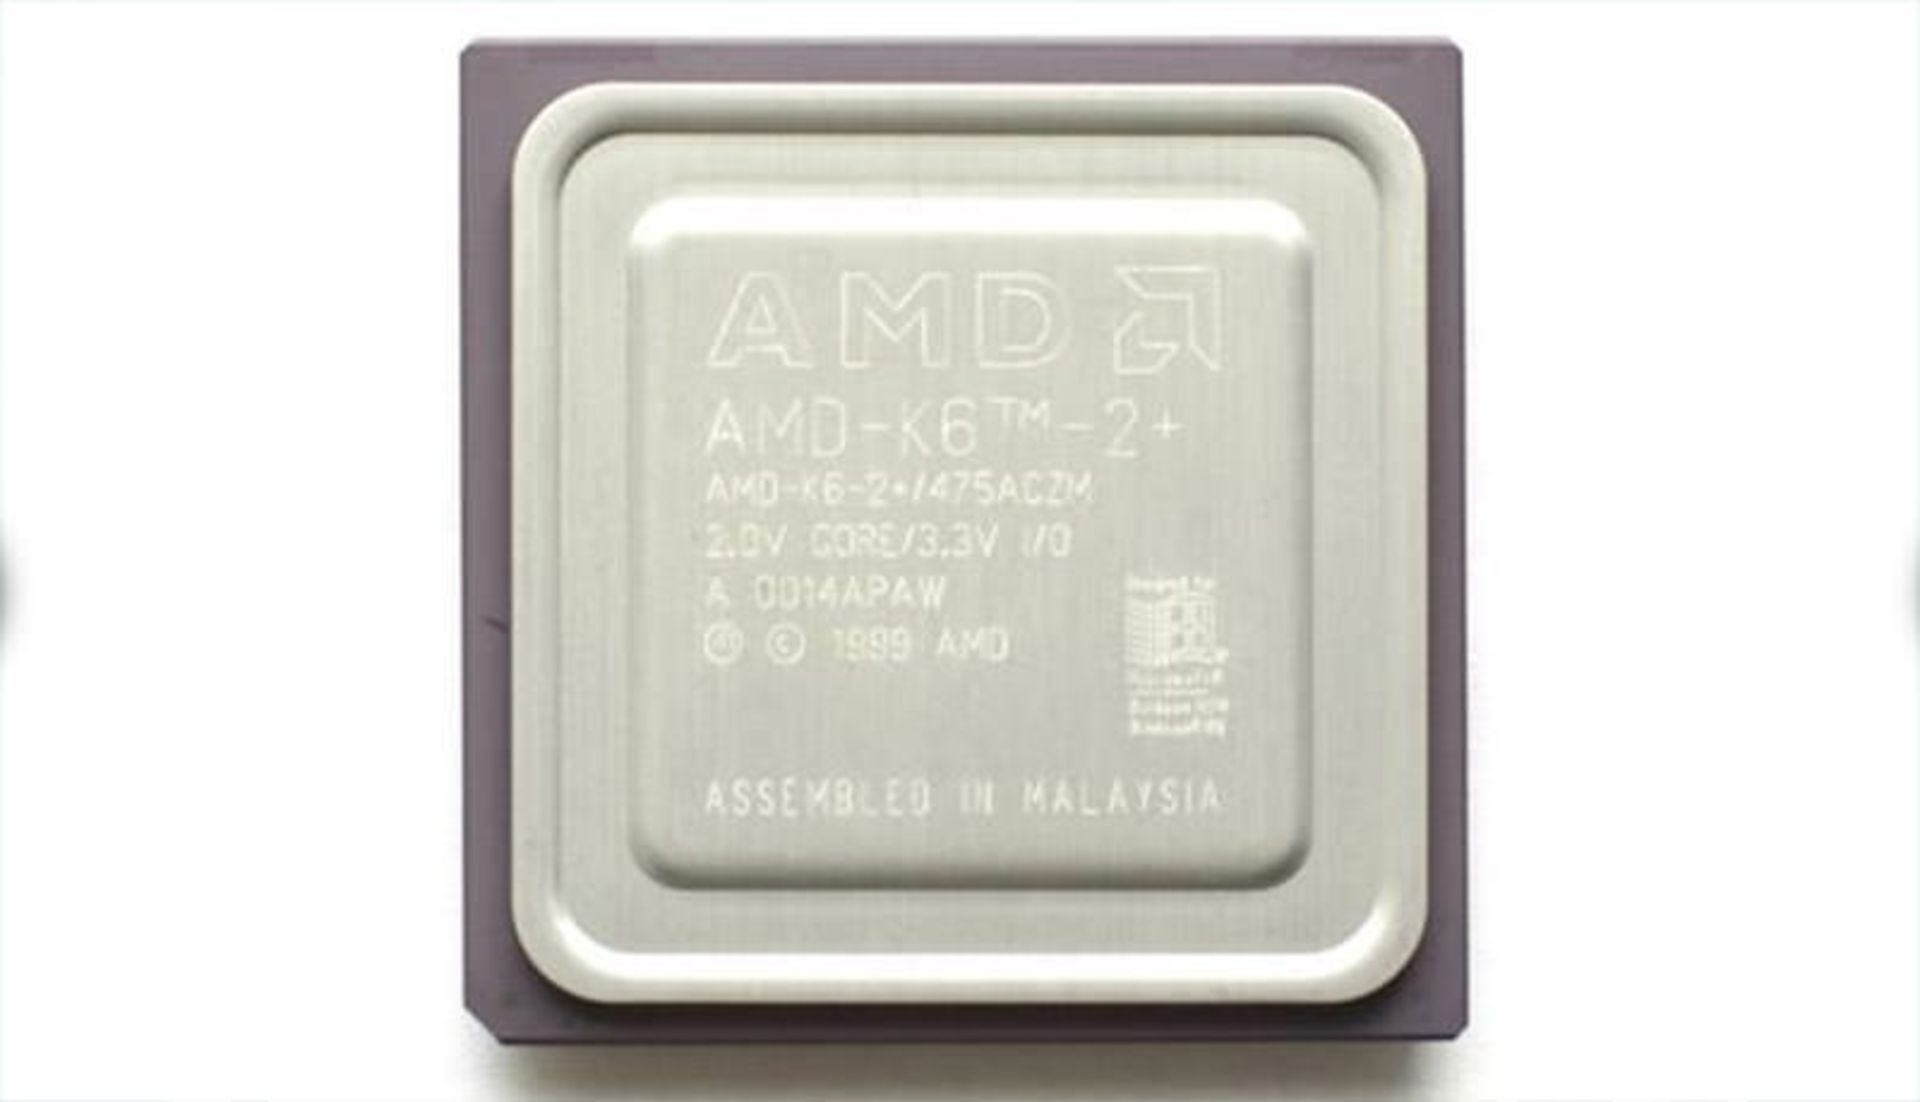 پردازنده k6 II + amd